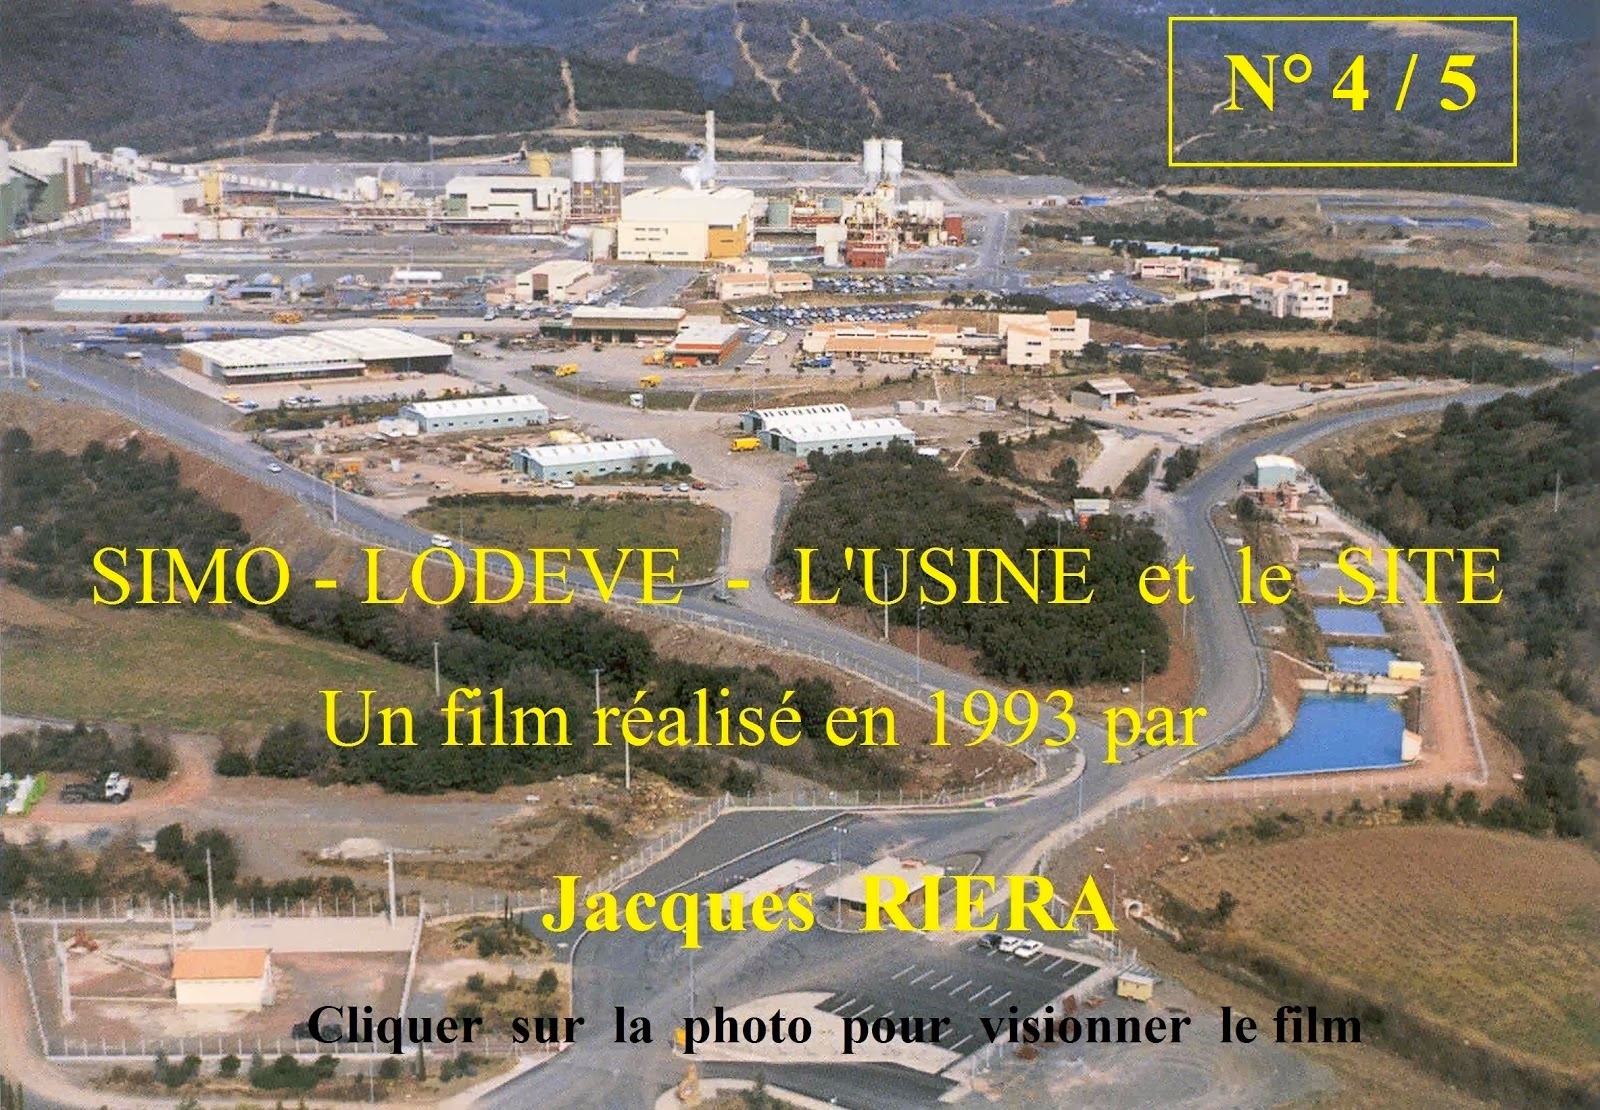 4/5 - La SIMO Lodève 1993 un film de Jacques RIERA - Cliquer sur la photo pour visionner